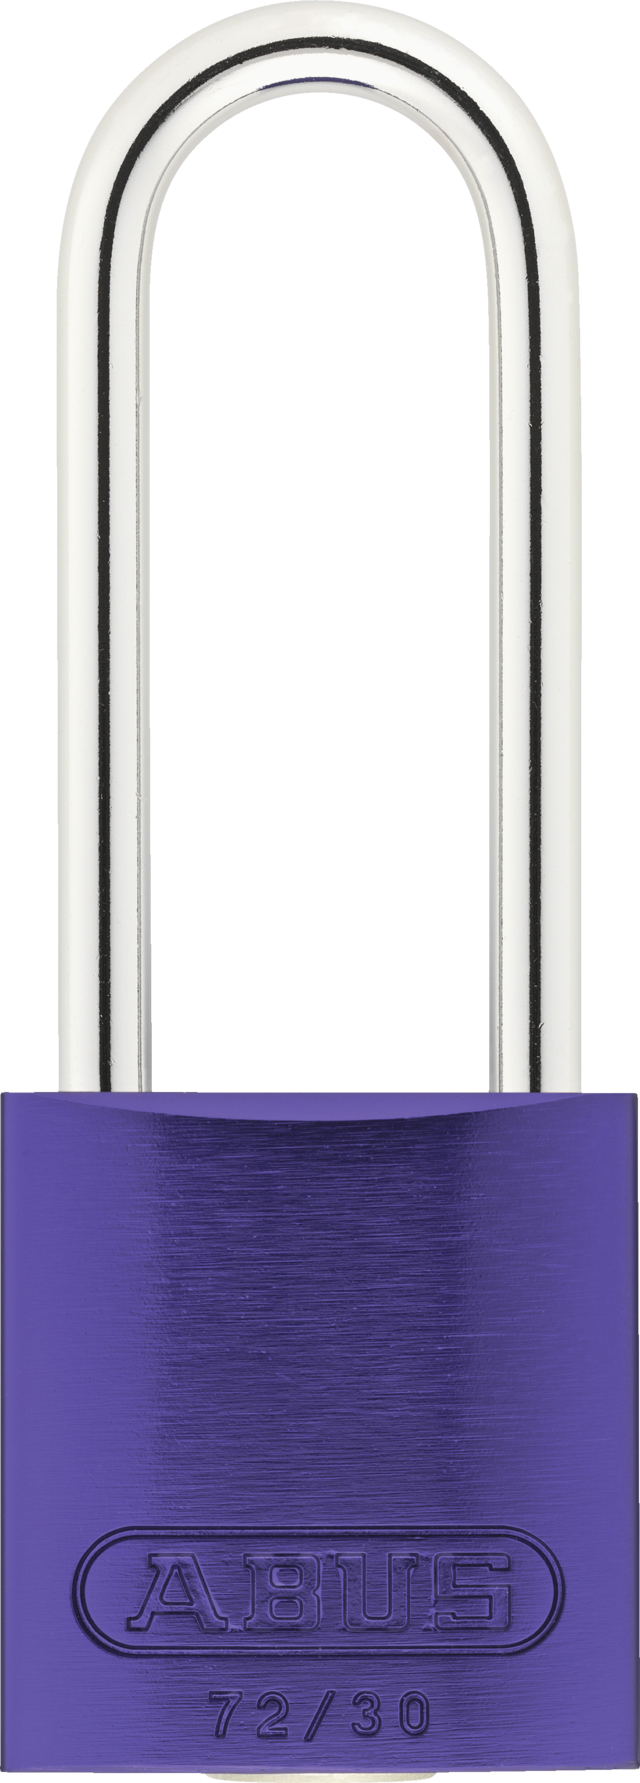 Candado de aluminio 72/30HB50 púrpura